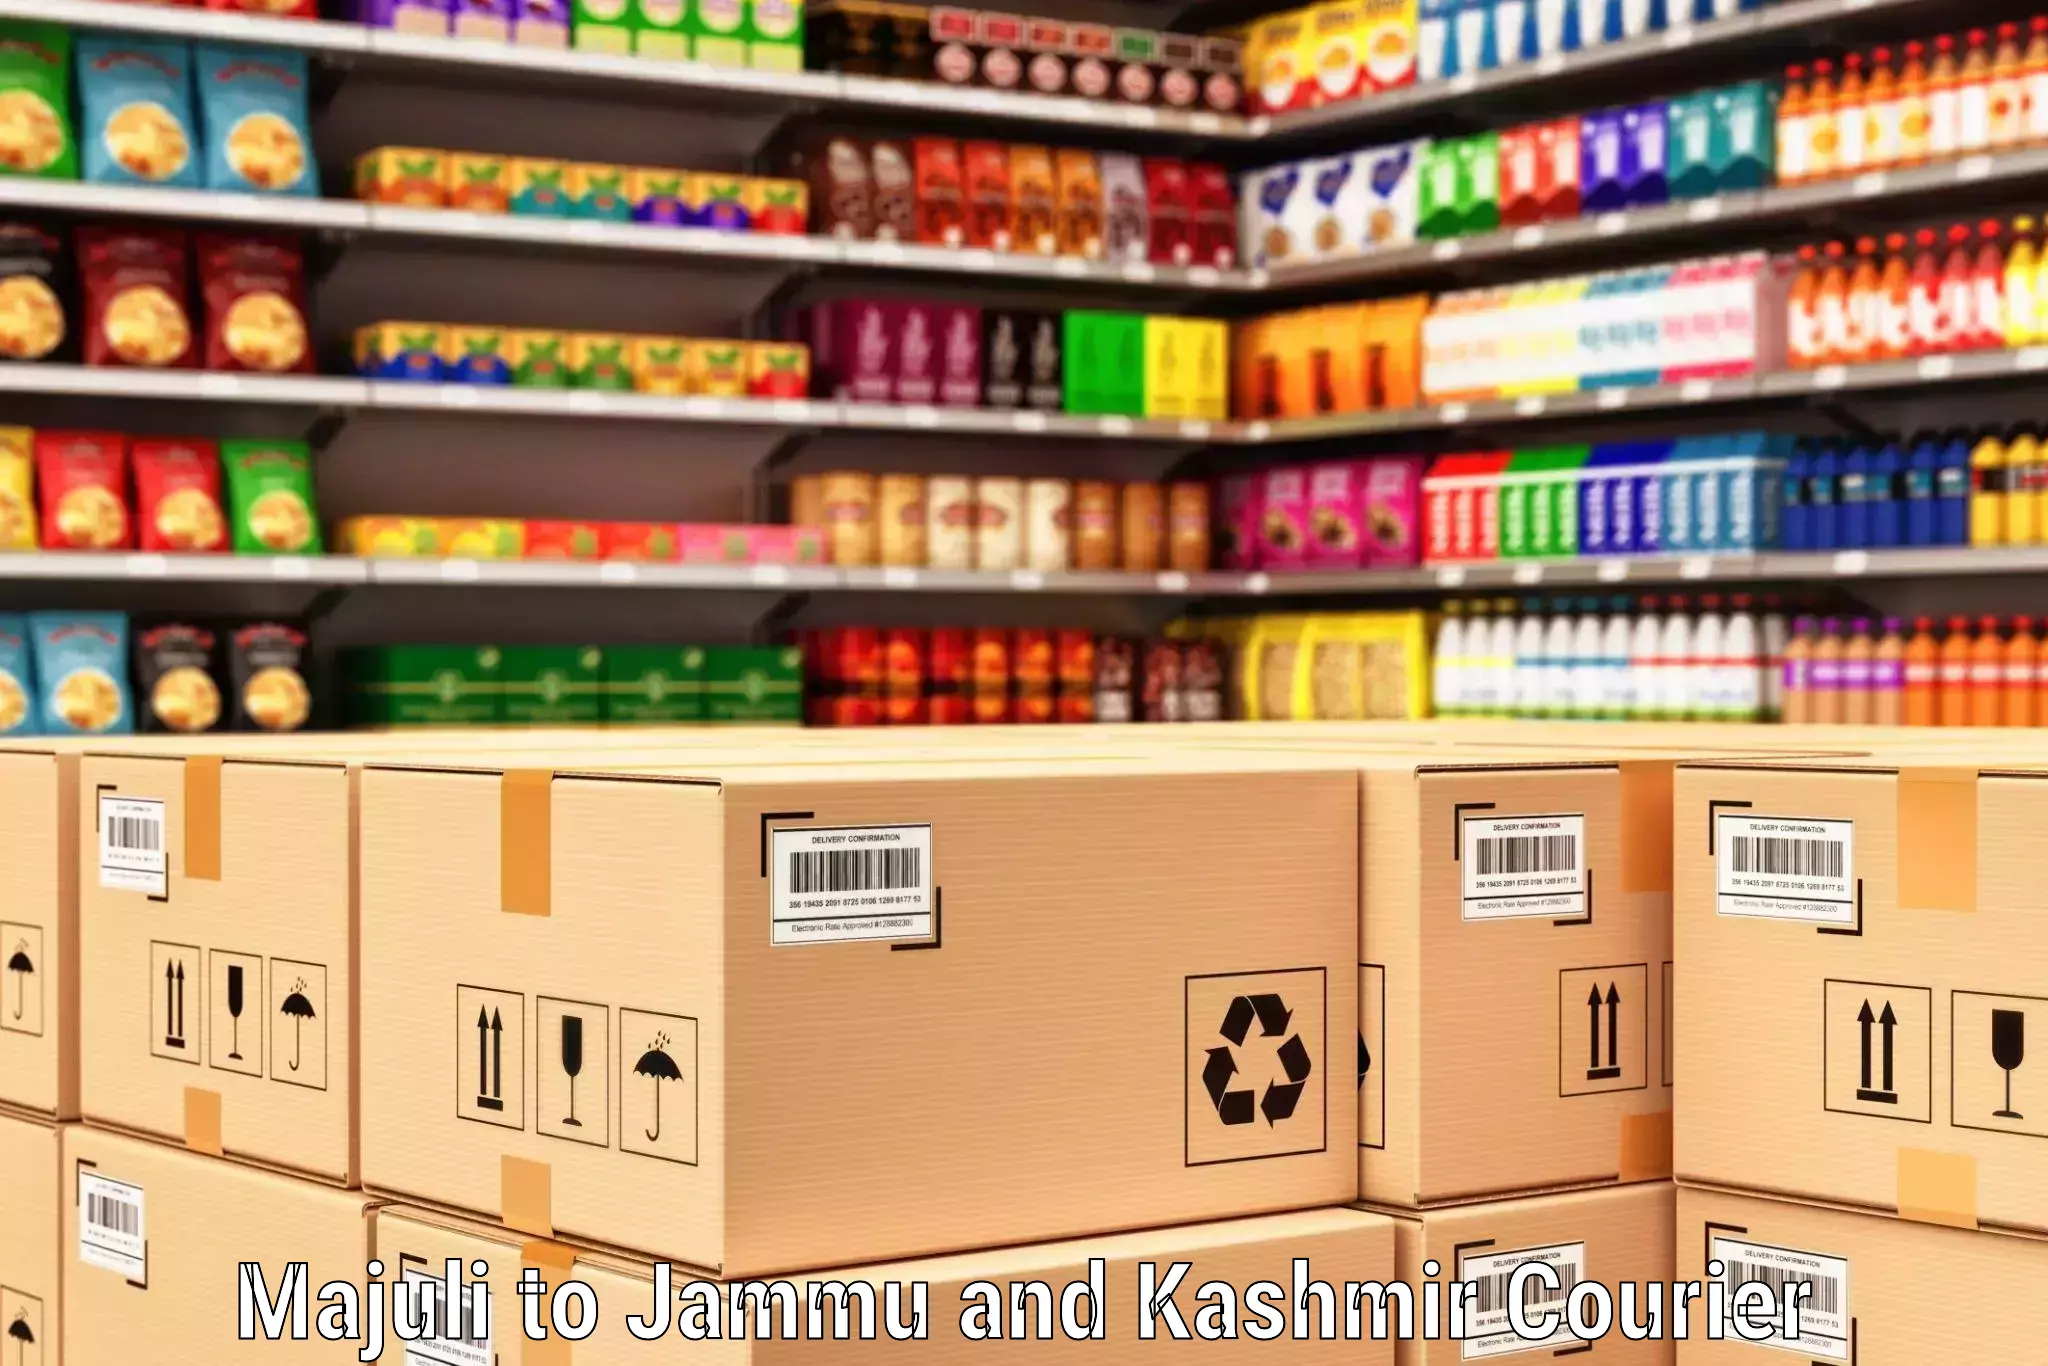 Global shipping solutions Majuli to Jammu and Kashmir